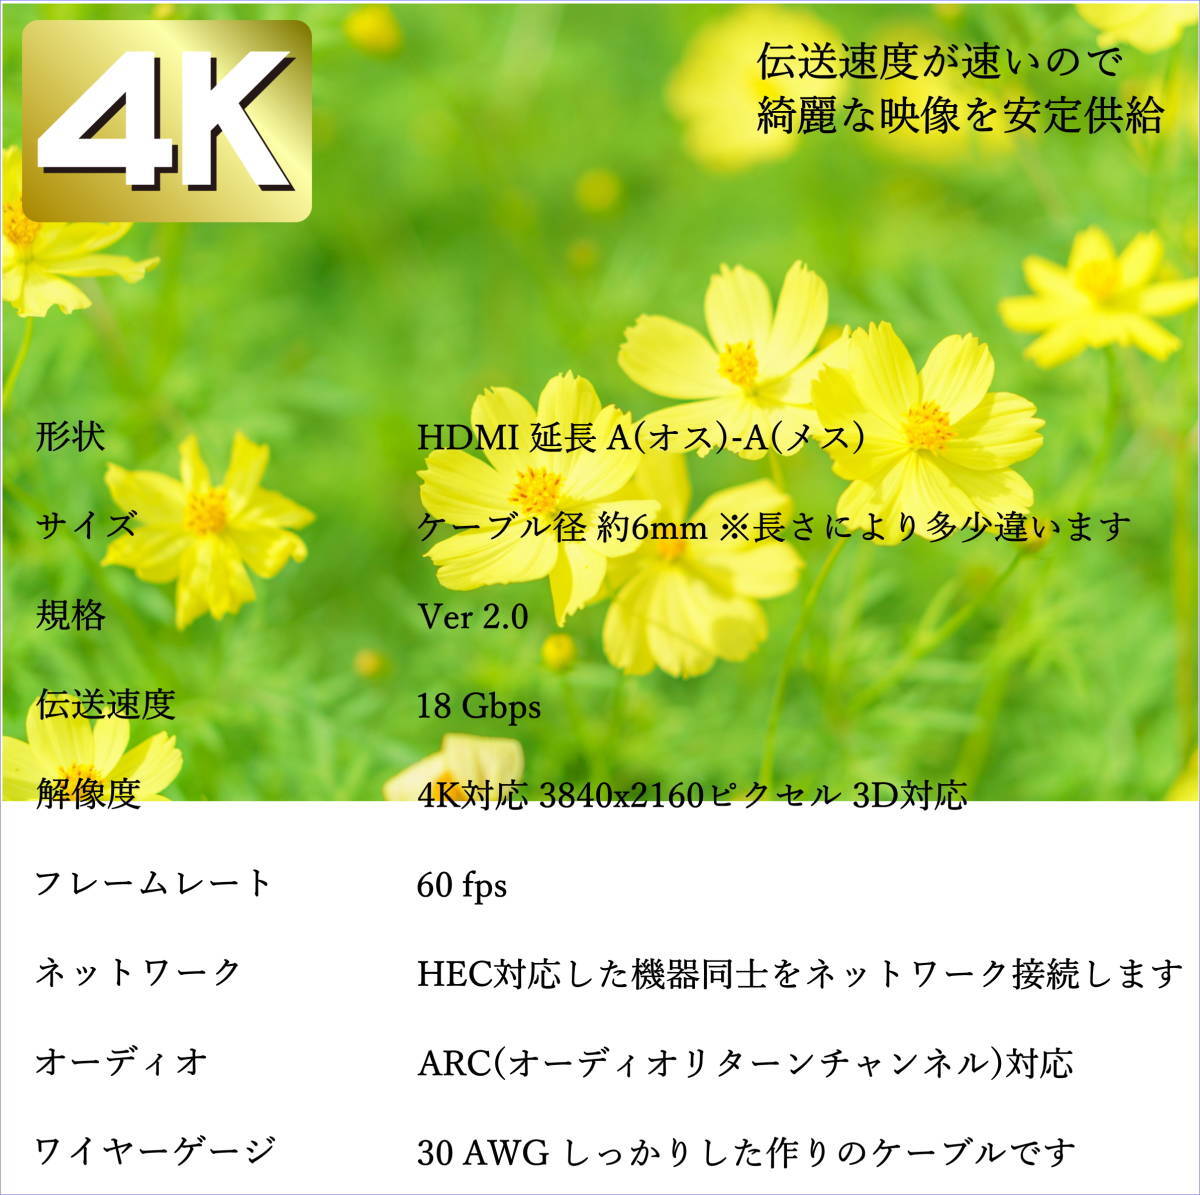 ☆★【送料無料】2m HDMI延長ケーブル 4K対応 Ver2.0 プレミアム HDMI A(オス/メス) COMON(カモン) 2HDMI-20E★☆_画像4